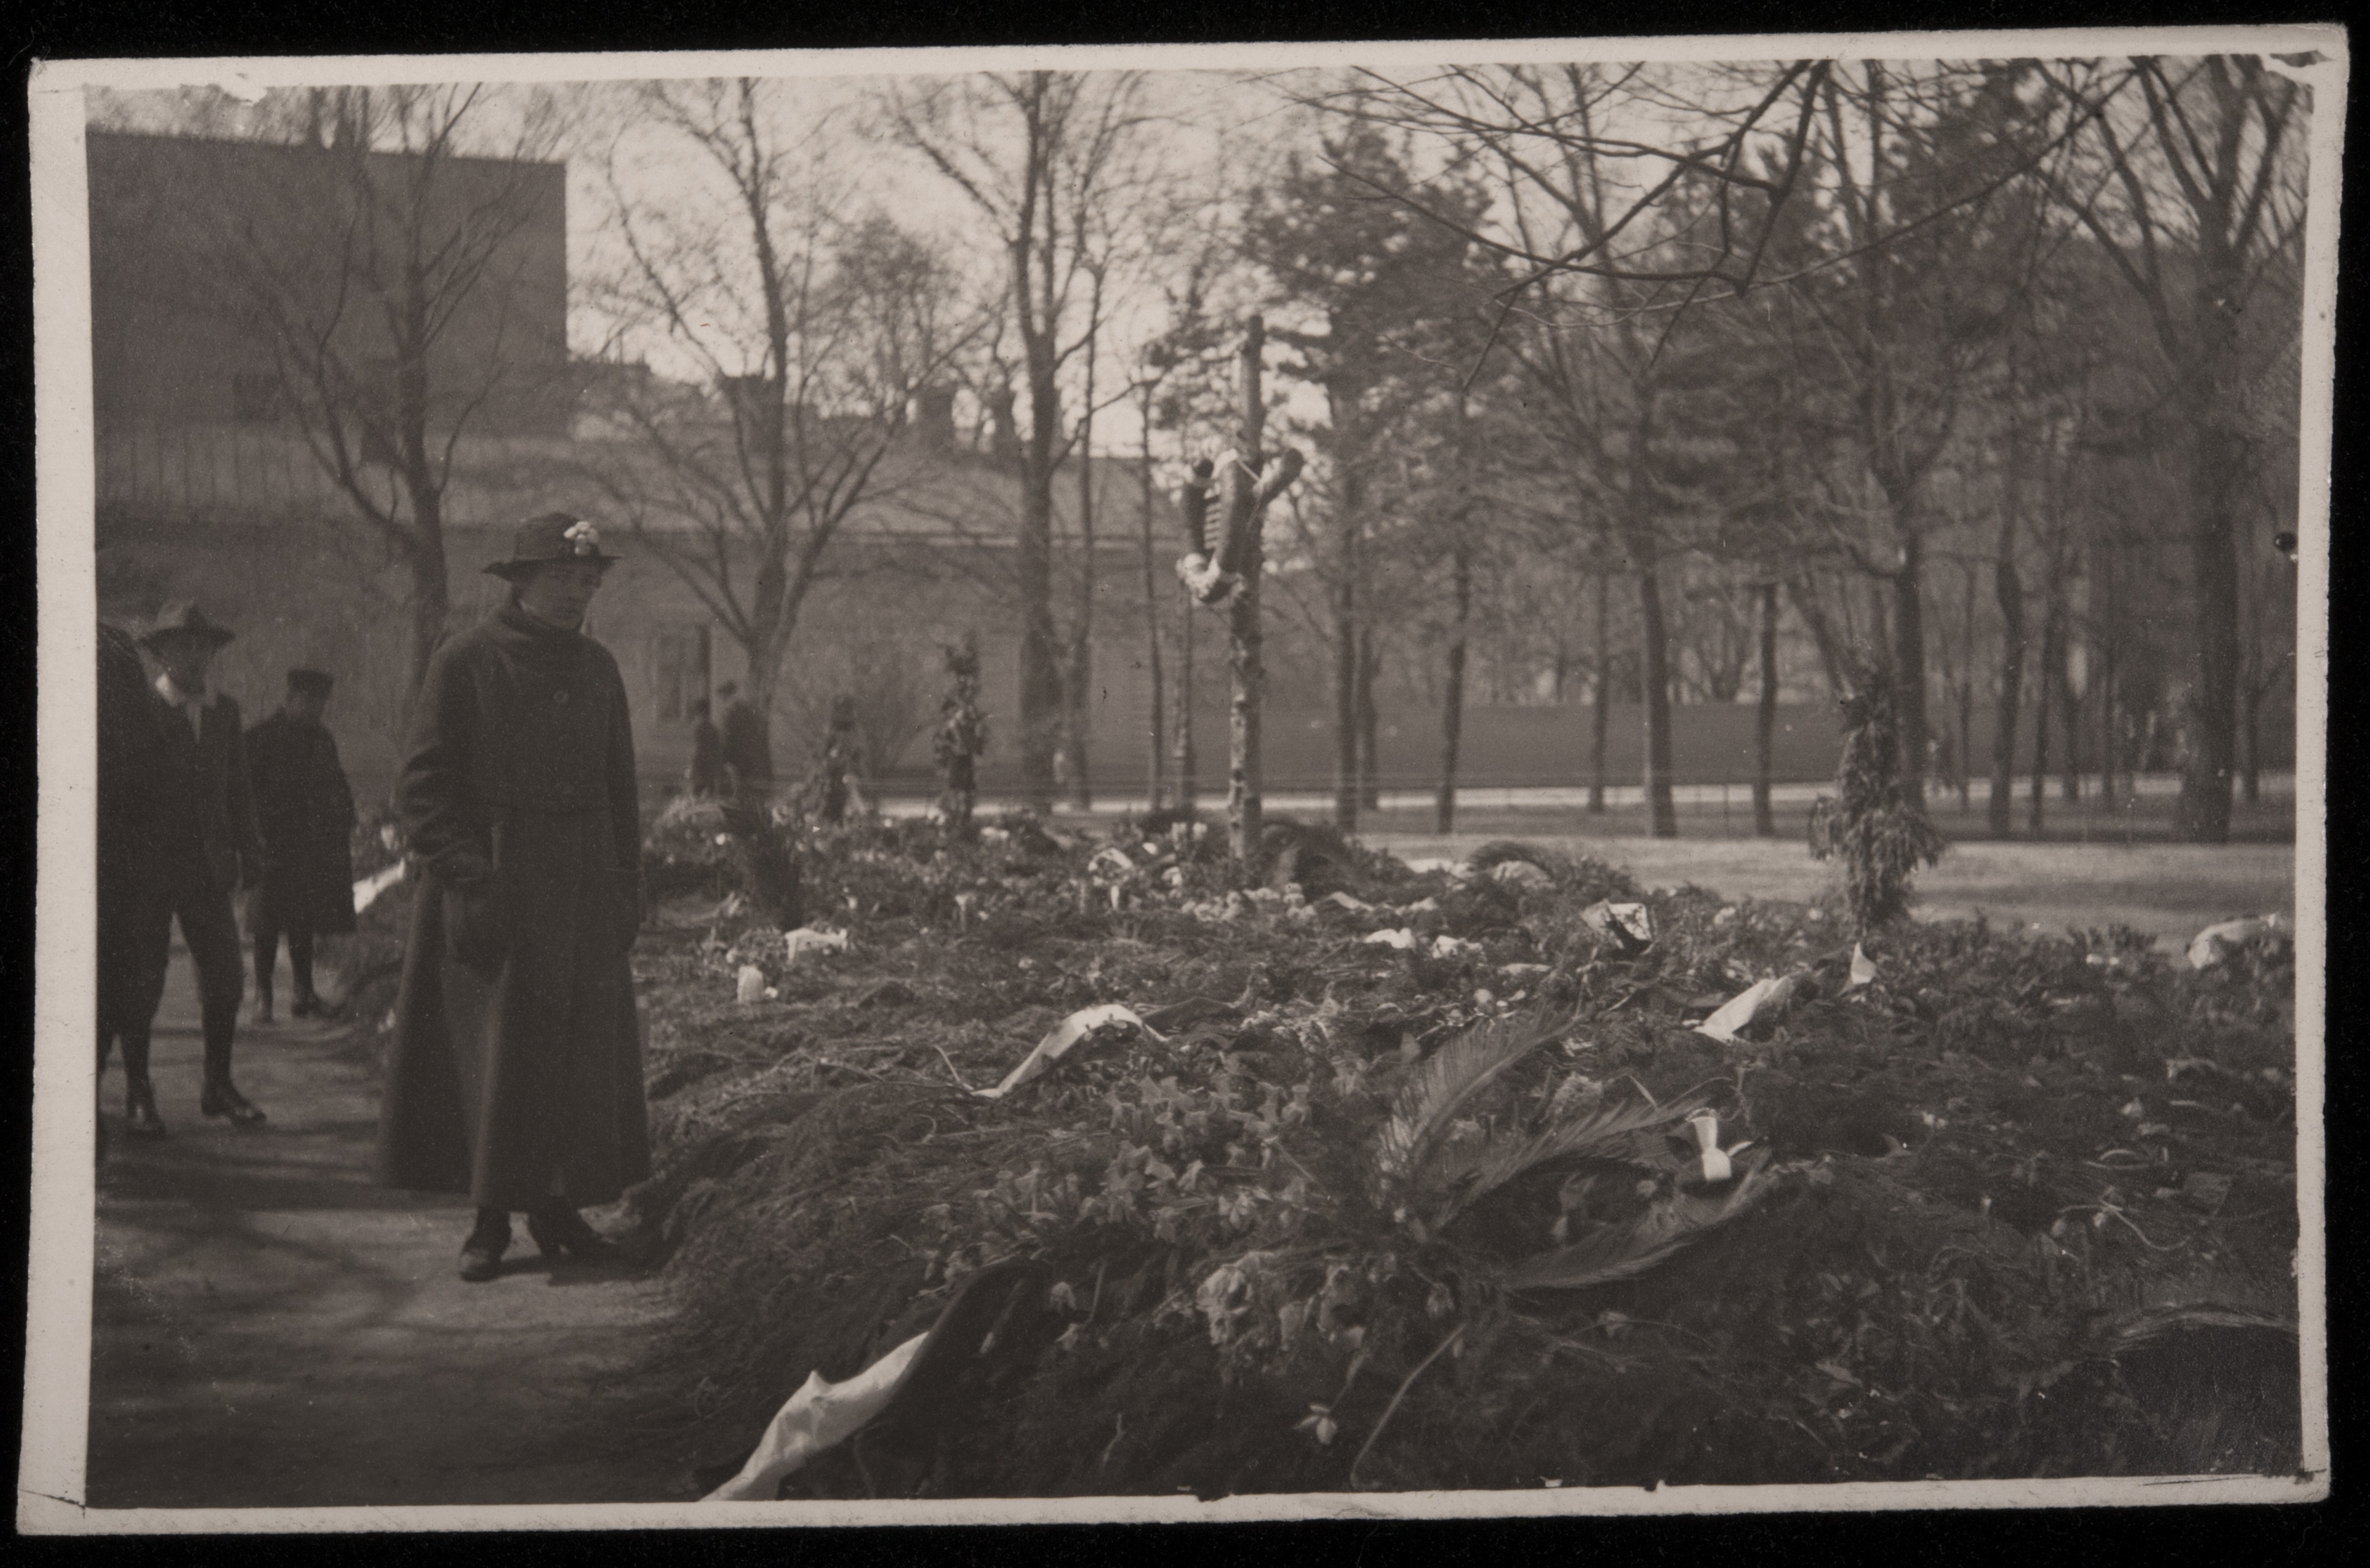 Vanha kirkkopuisto. Helsingin valtauksessa 1918 kaatuneiden mahdollisesti saksalaisten sotilaiden hauta.